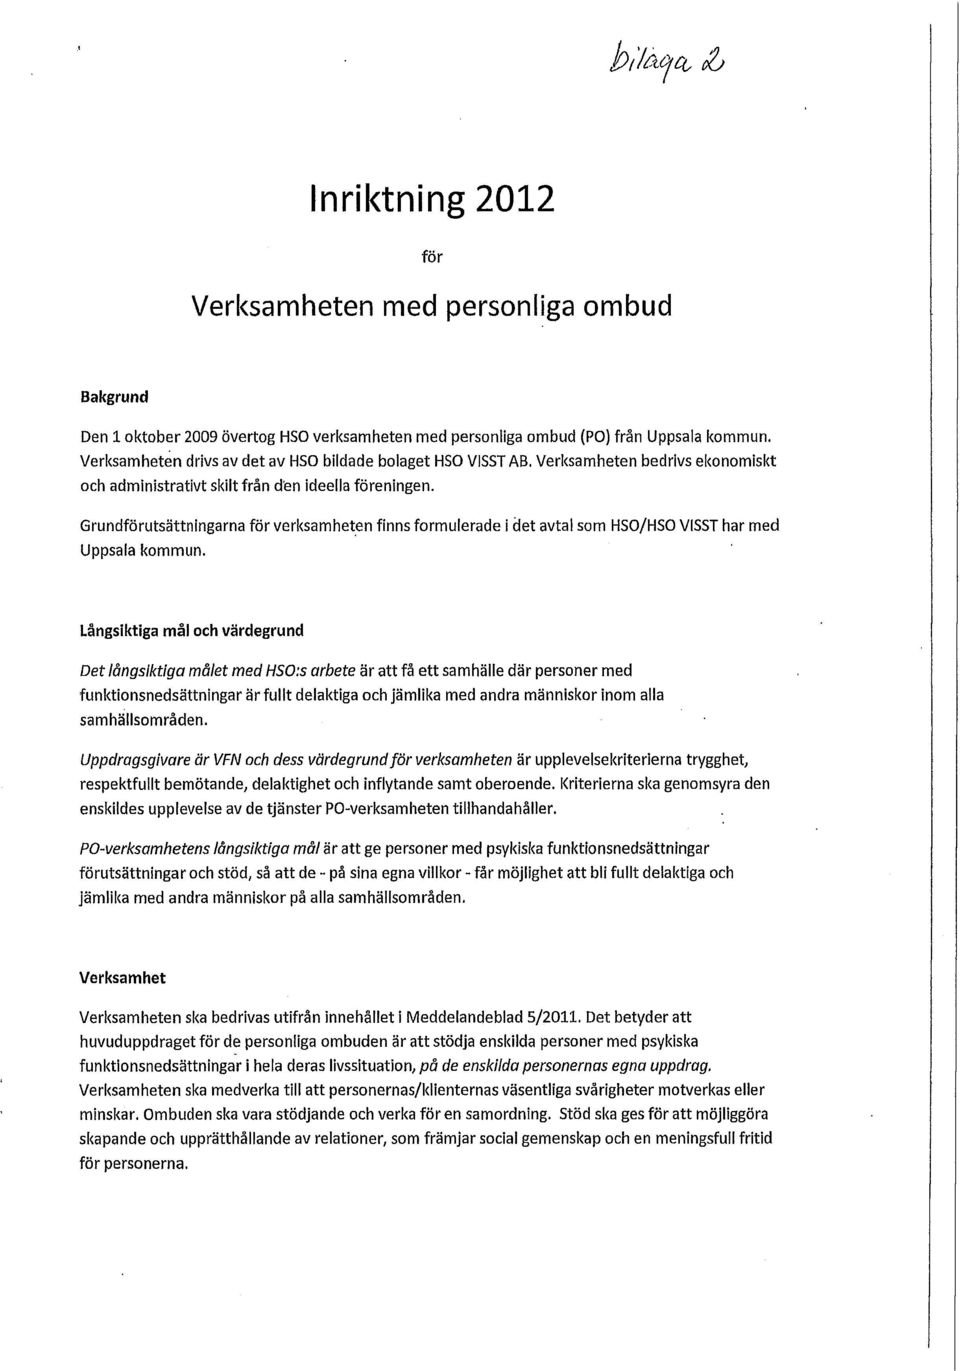 Grundförutsättningarna för verksamheten finns formulerade i det avtal som HSO/HSO VISST har med Uppsala kommun.